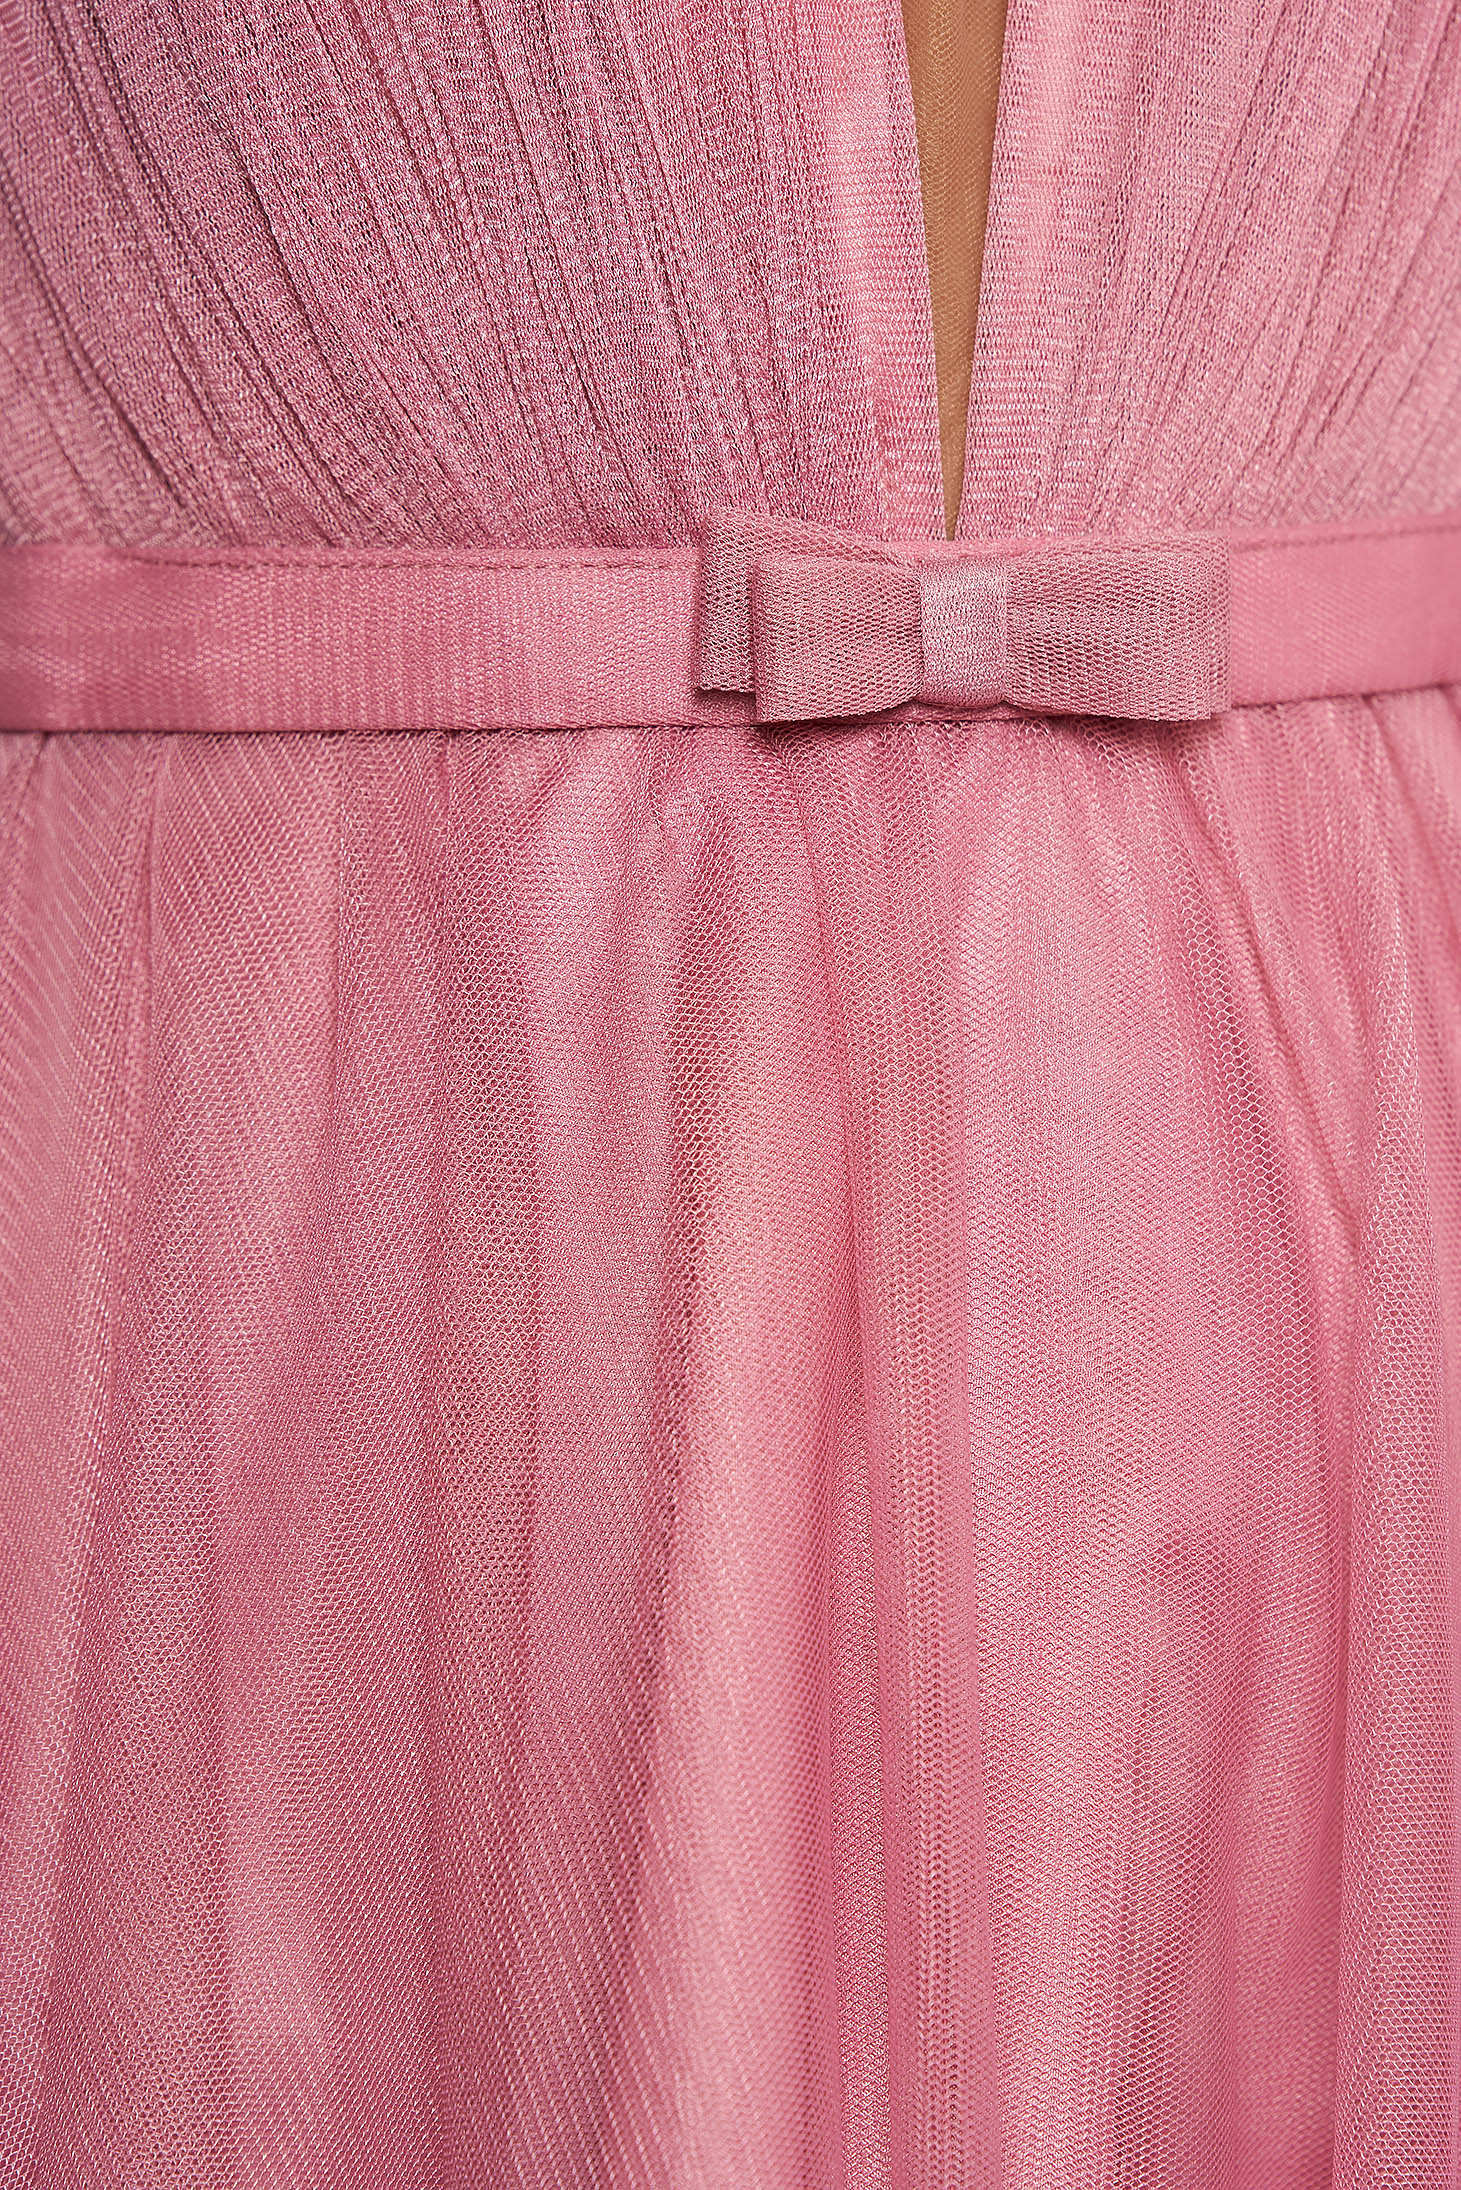 Világos rózsaszín Ana Radu luxus ruha tüllből övvel ellátva mély dekoltázzsal és béléssel 4 - StarShinerS.hu